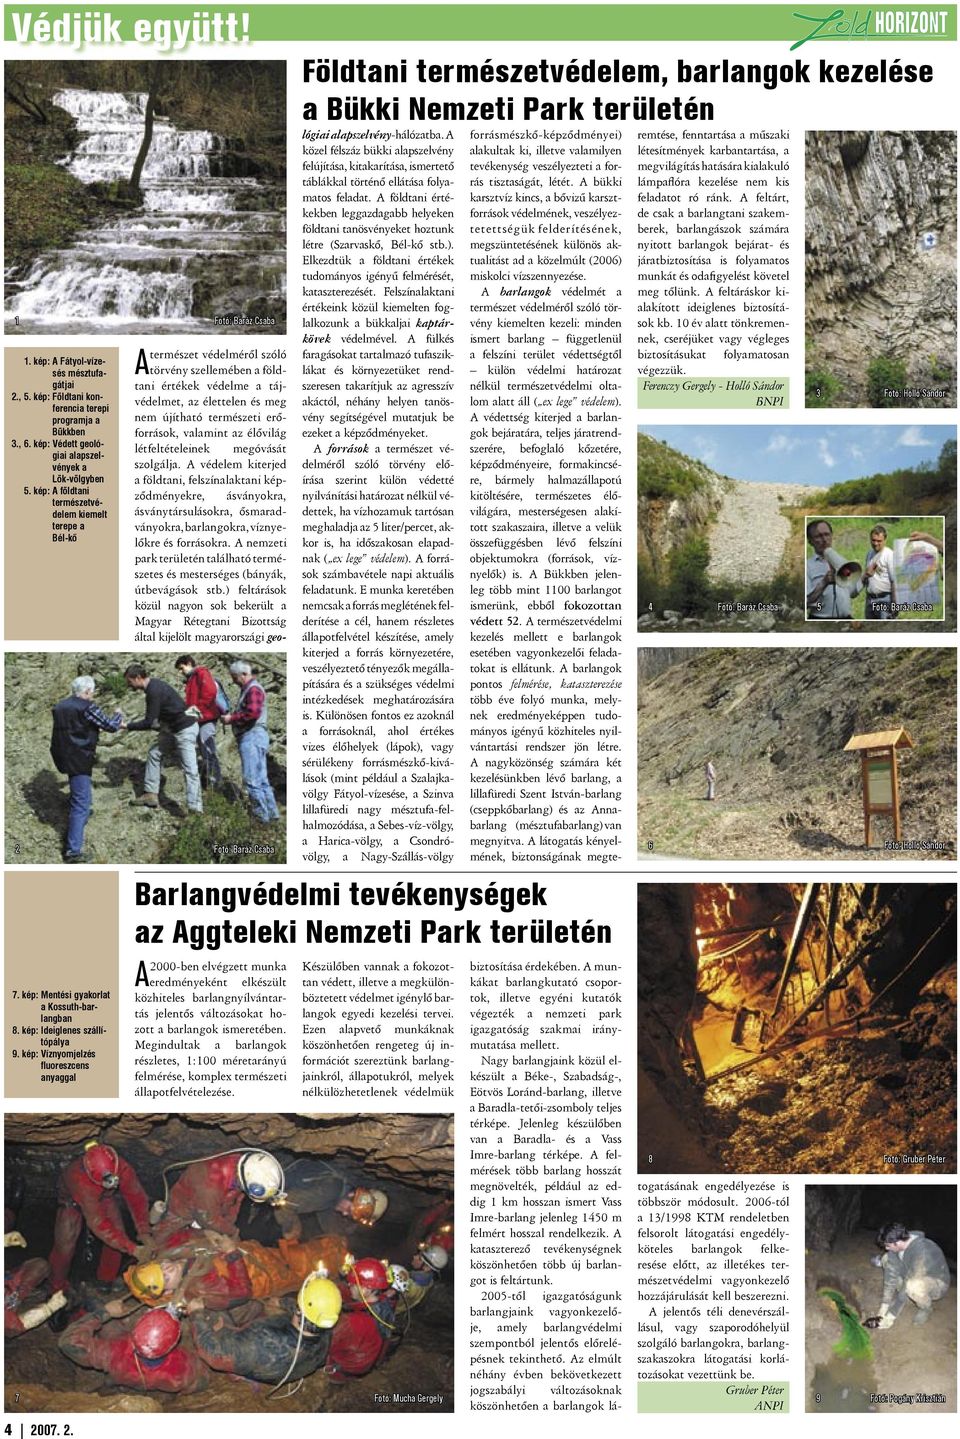 kép: Víznyomjelzés fl uoreszcens anyaggal A 2000-ben elvégzett munka eredményeként elkészült közhiteles barlangnyíl ván tartás jelentős változásokat hozott a barlangok ismeretében.